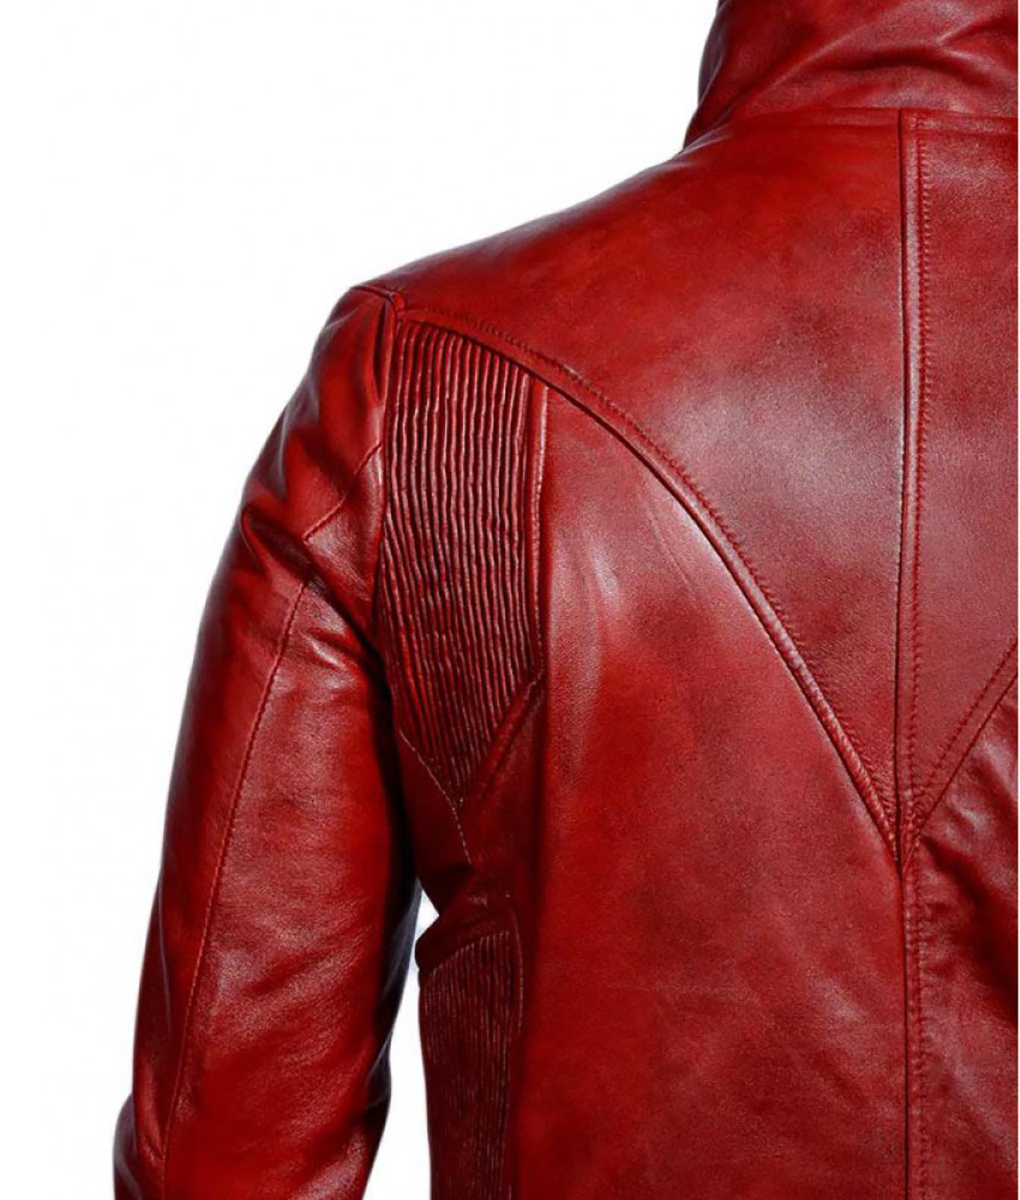 Daredevil Ben Affleck Red Leather Jacket